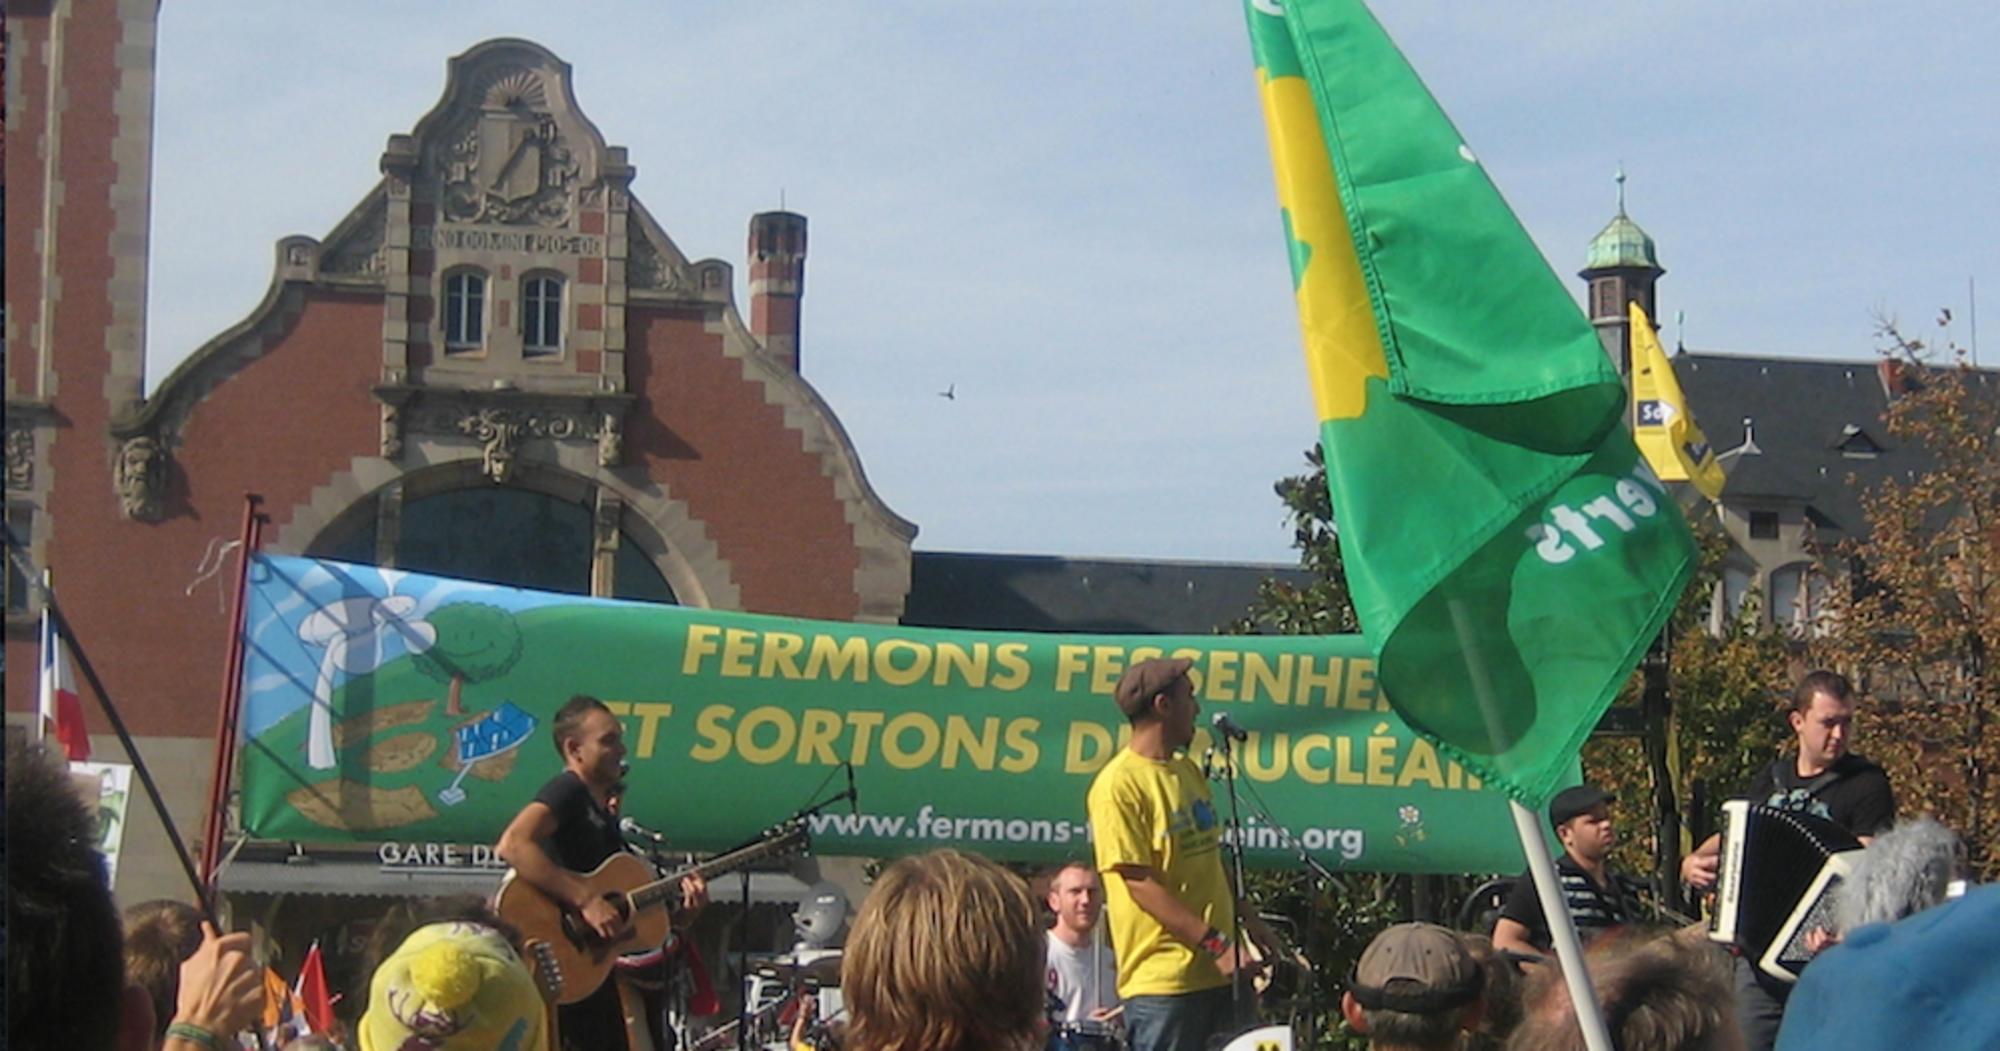 Concierto-manifestación por el cierre de Fessenheim, en Francia. Fuente: Beyond Nuclear.